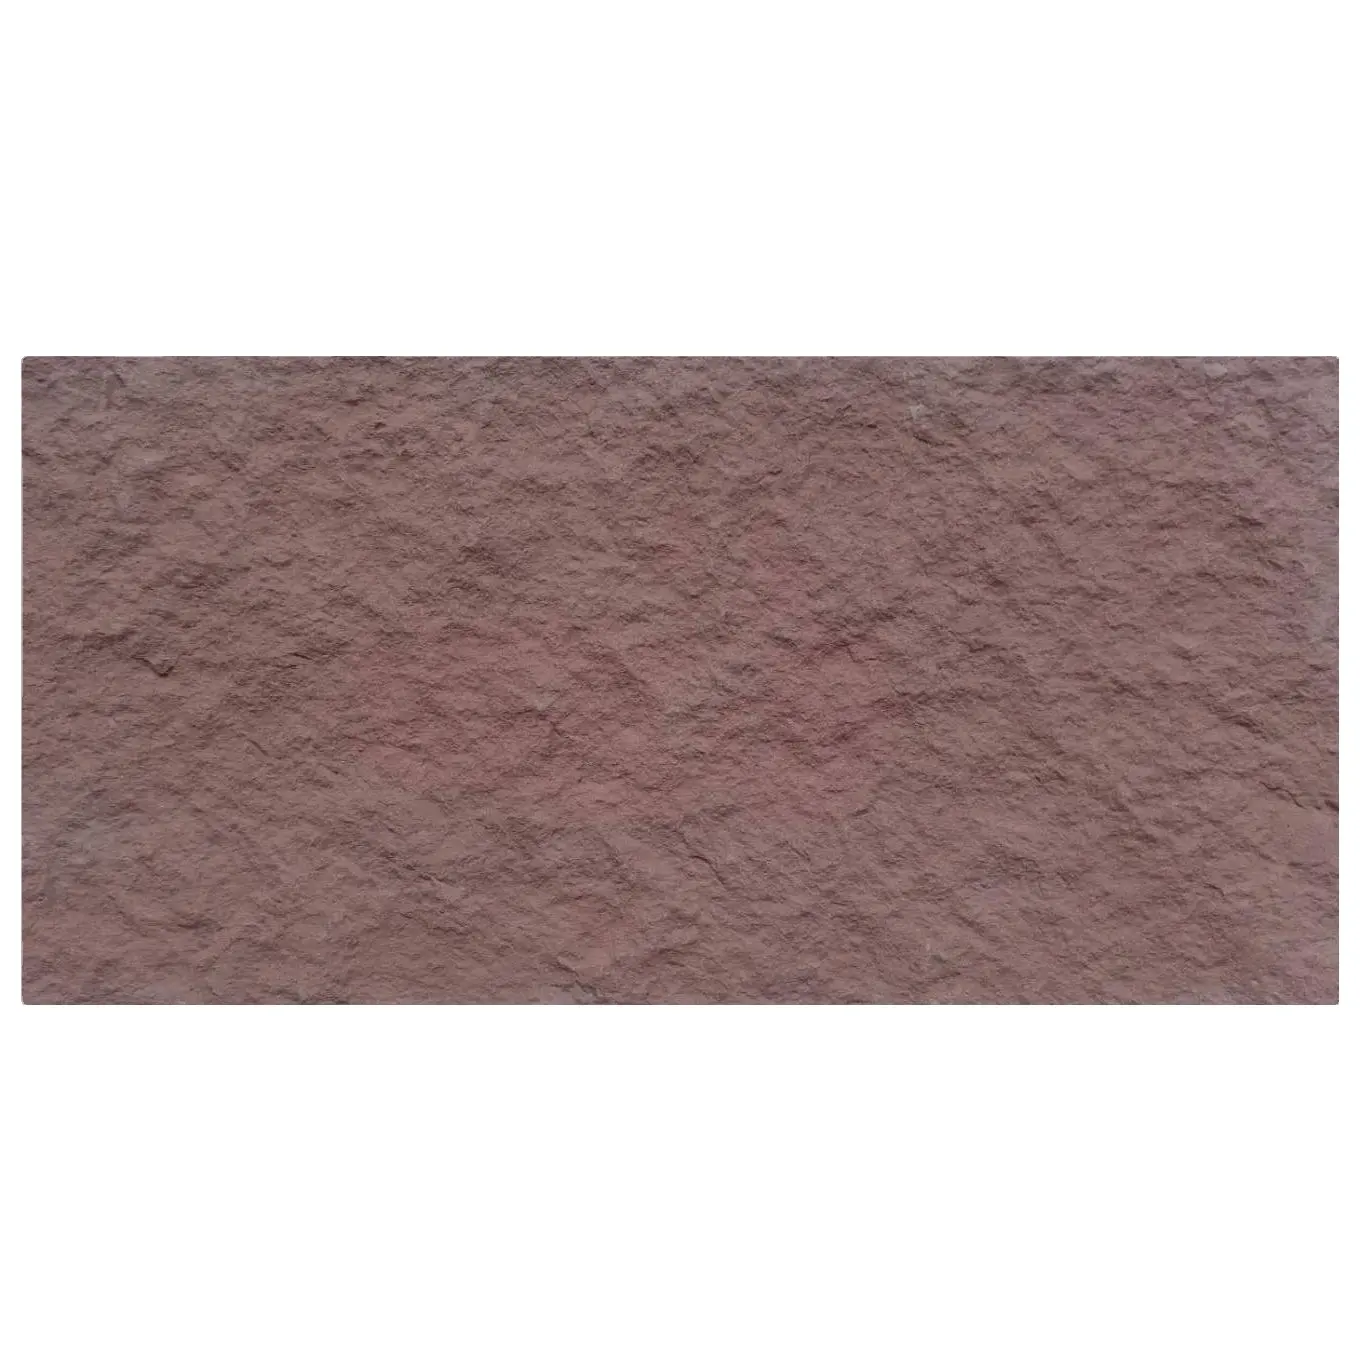 壁の石の外部タイルのクラッディングタイル床のスラブのための天然炭素のスレートパネルInggegクリーム色のカウンタートップピンクの粗い花崗岩